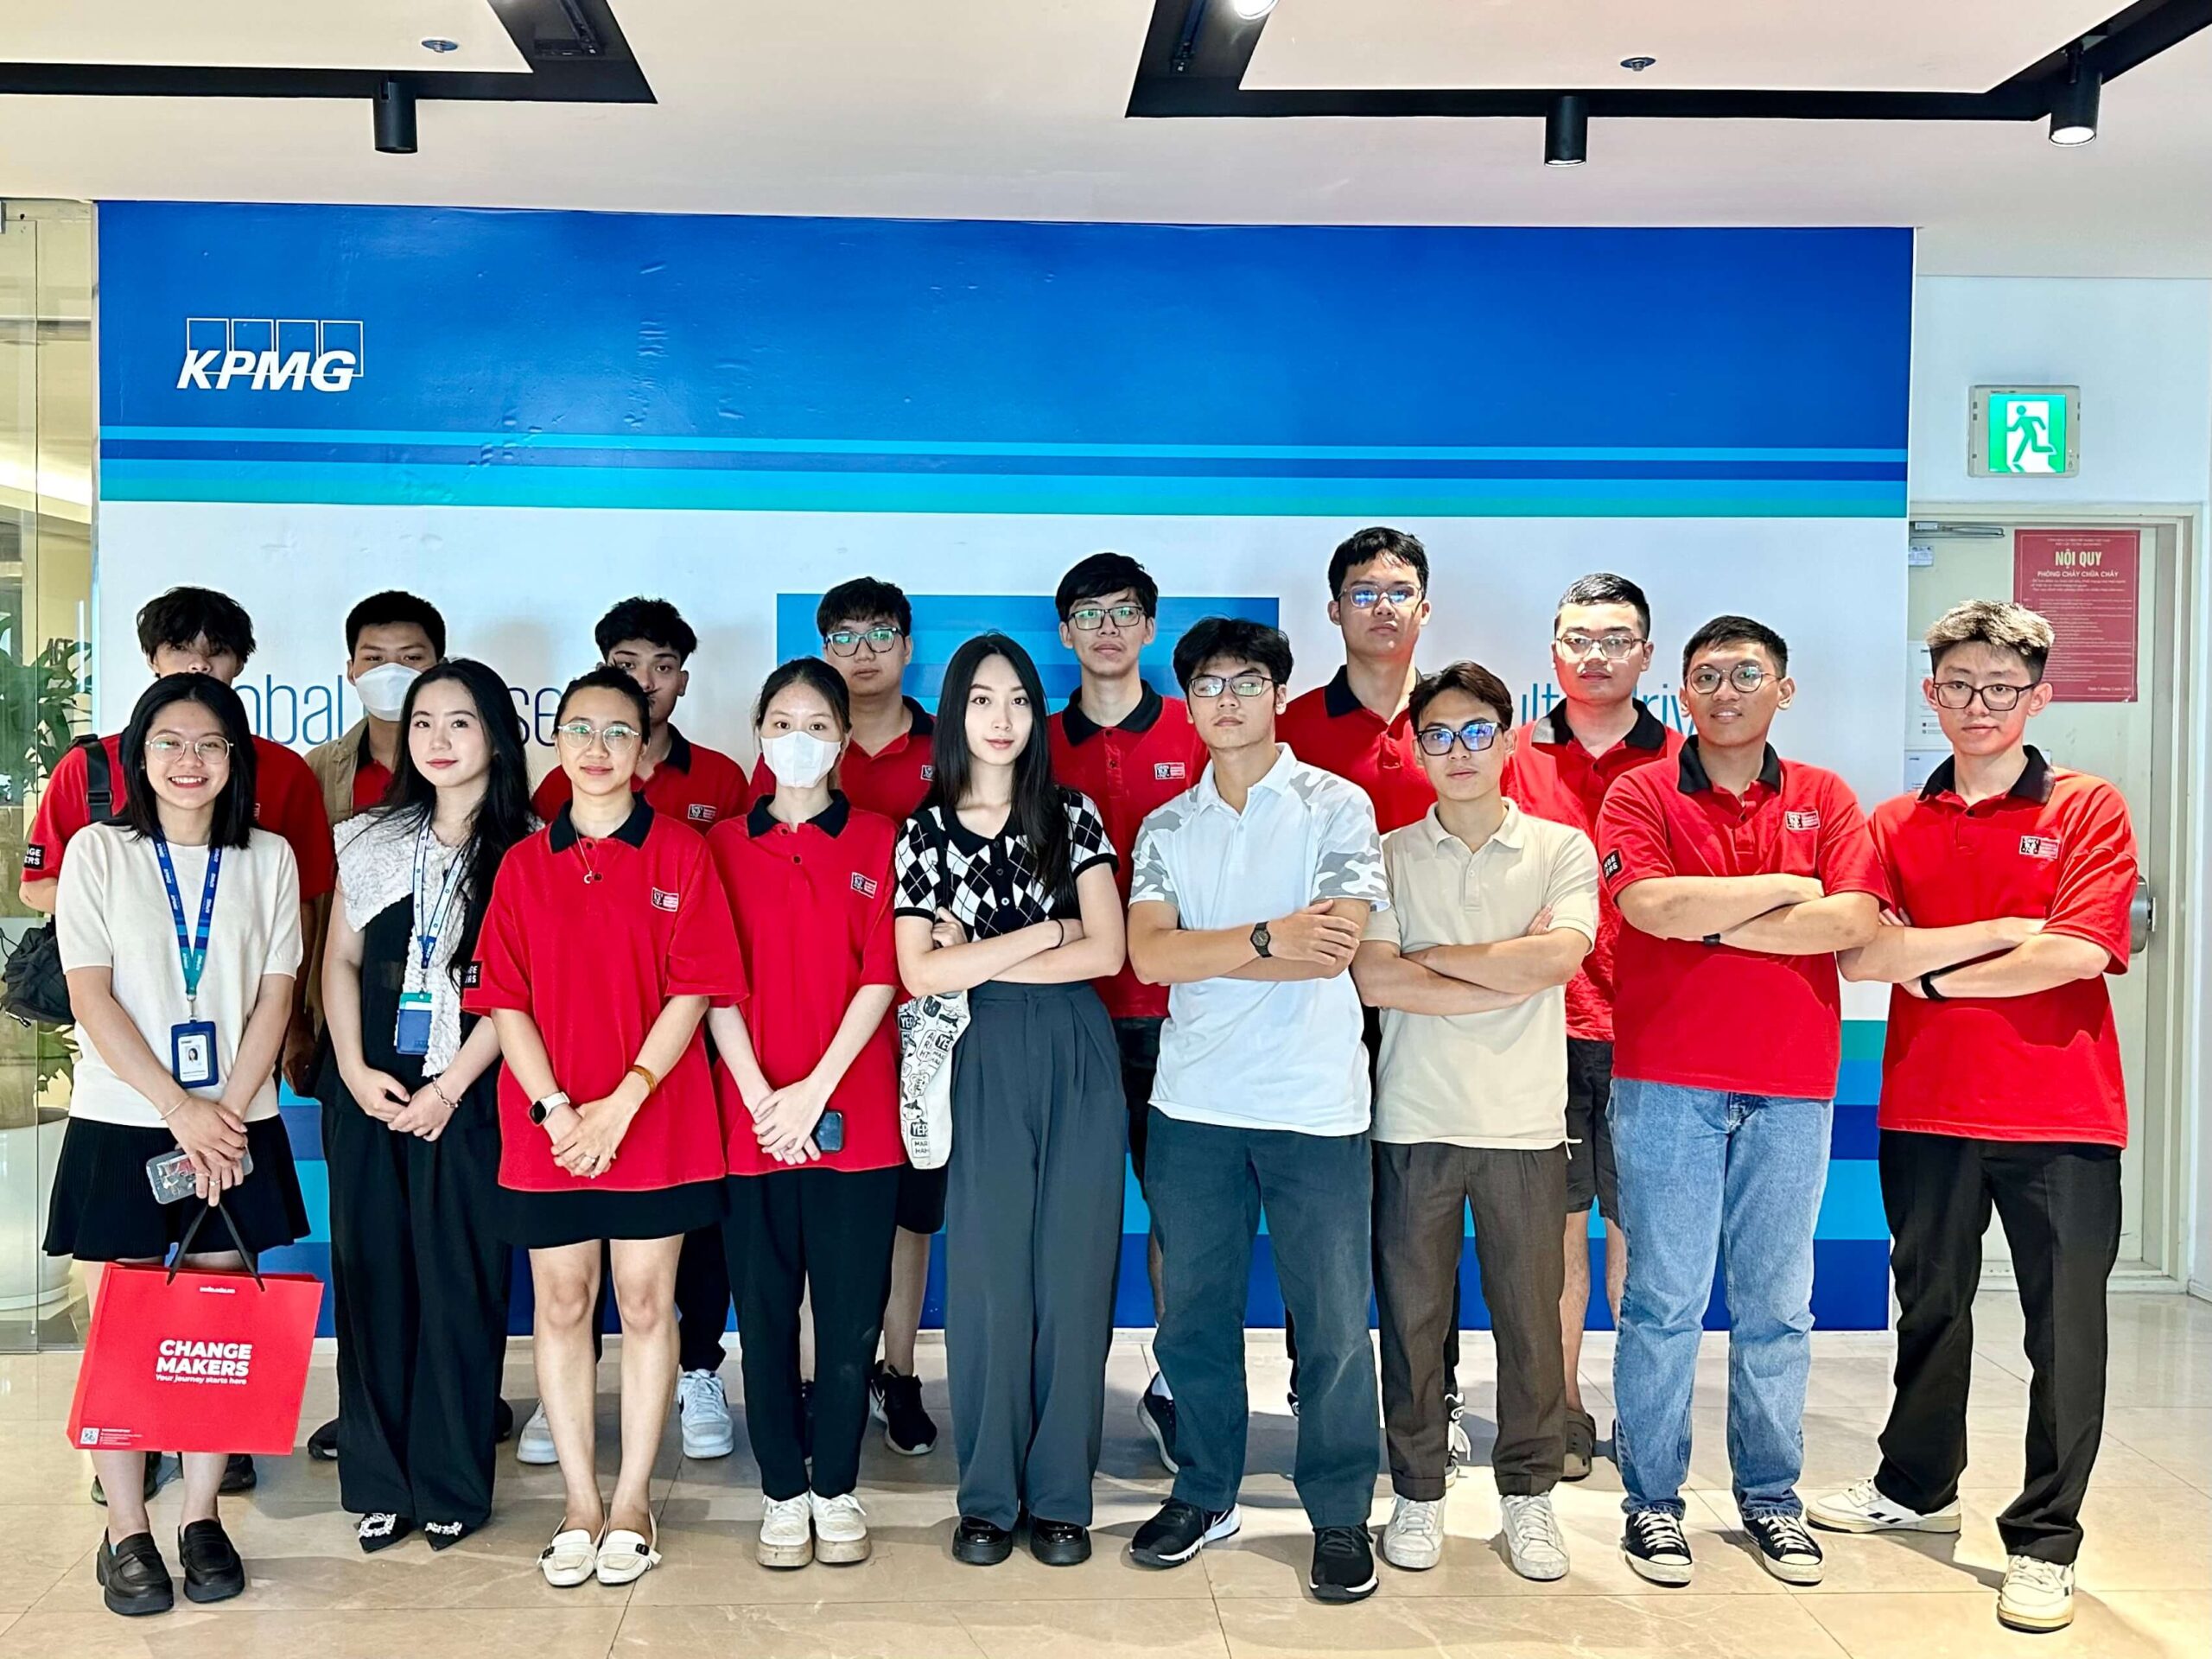 Đoàn sinh viên Swinburne Việt Nam học tập thực tế tại văn phòng KPMG Việt Nam